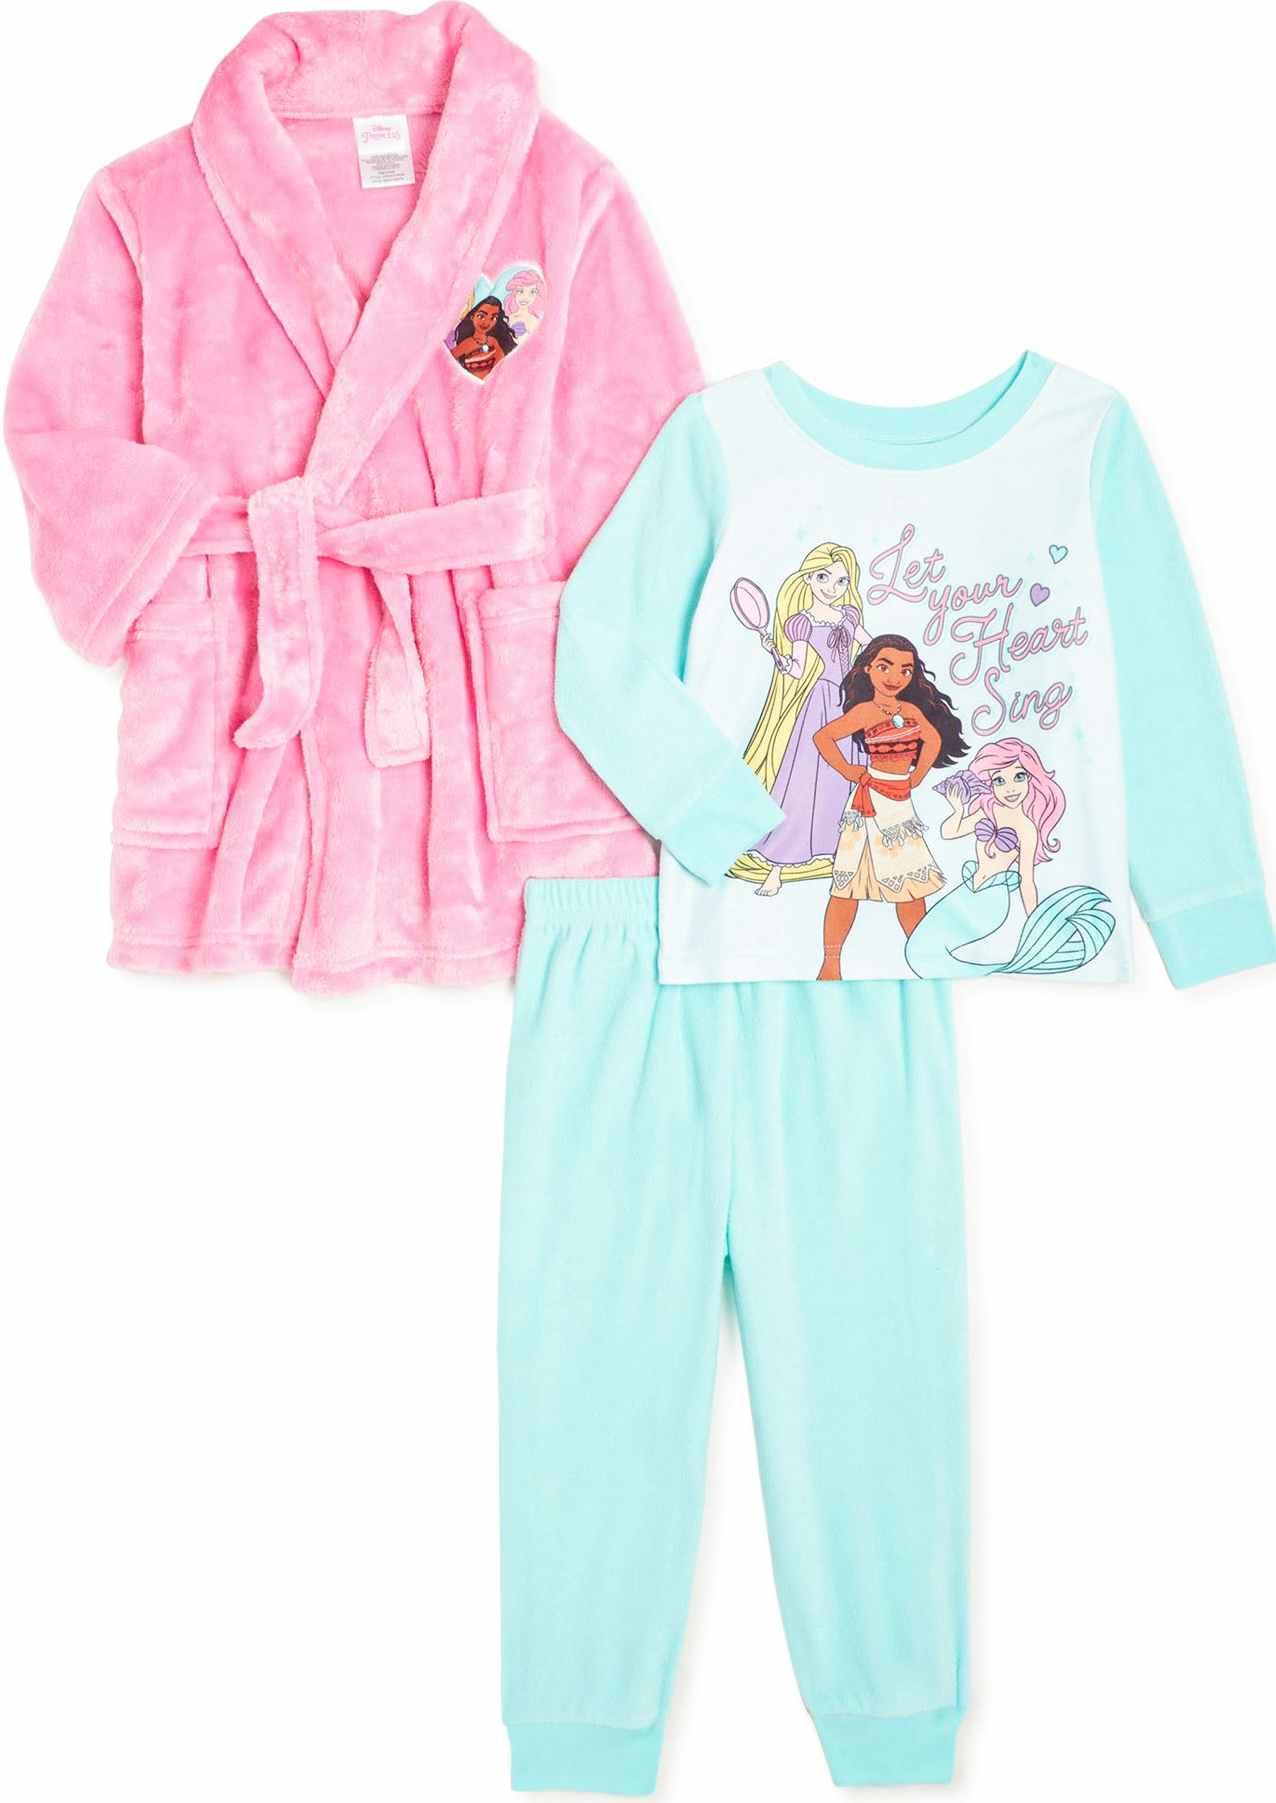 walmart toddler pajama set with robe screenshot